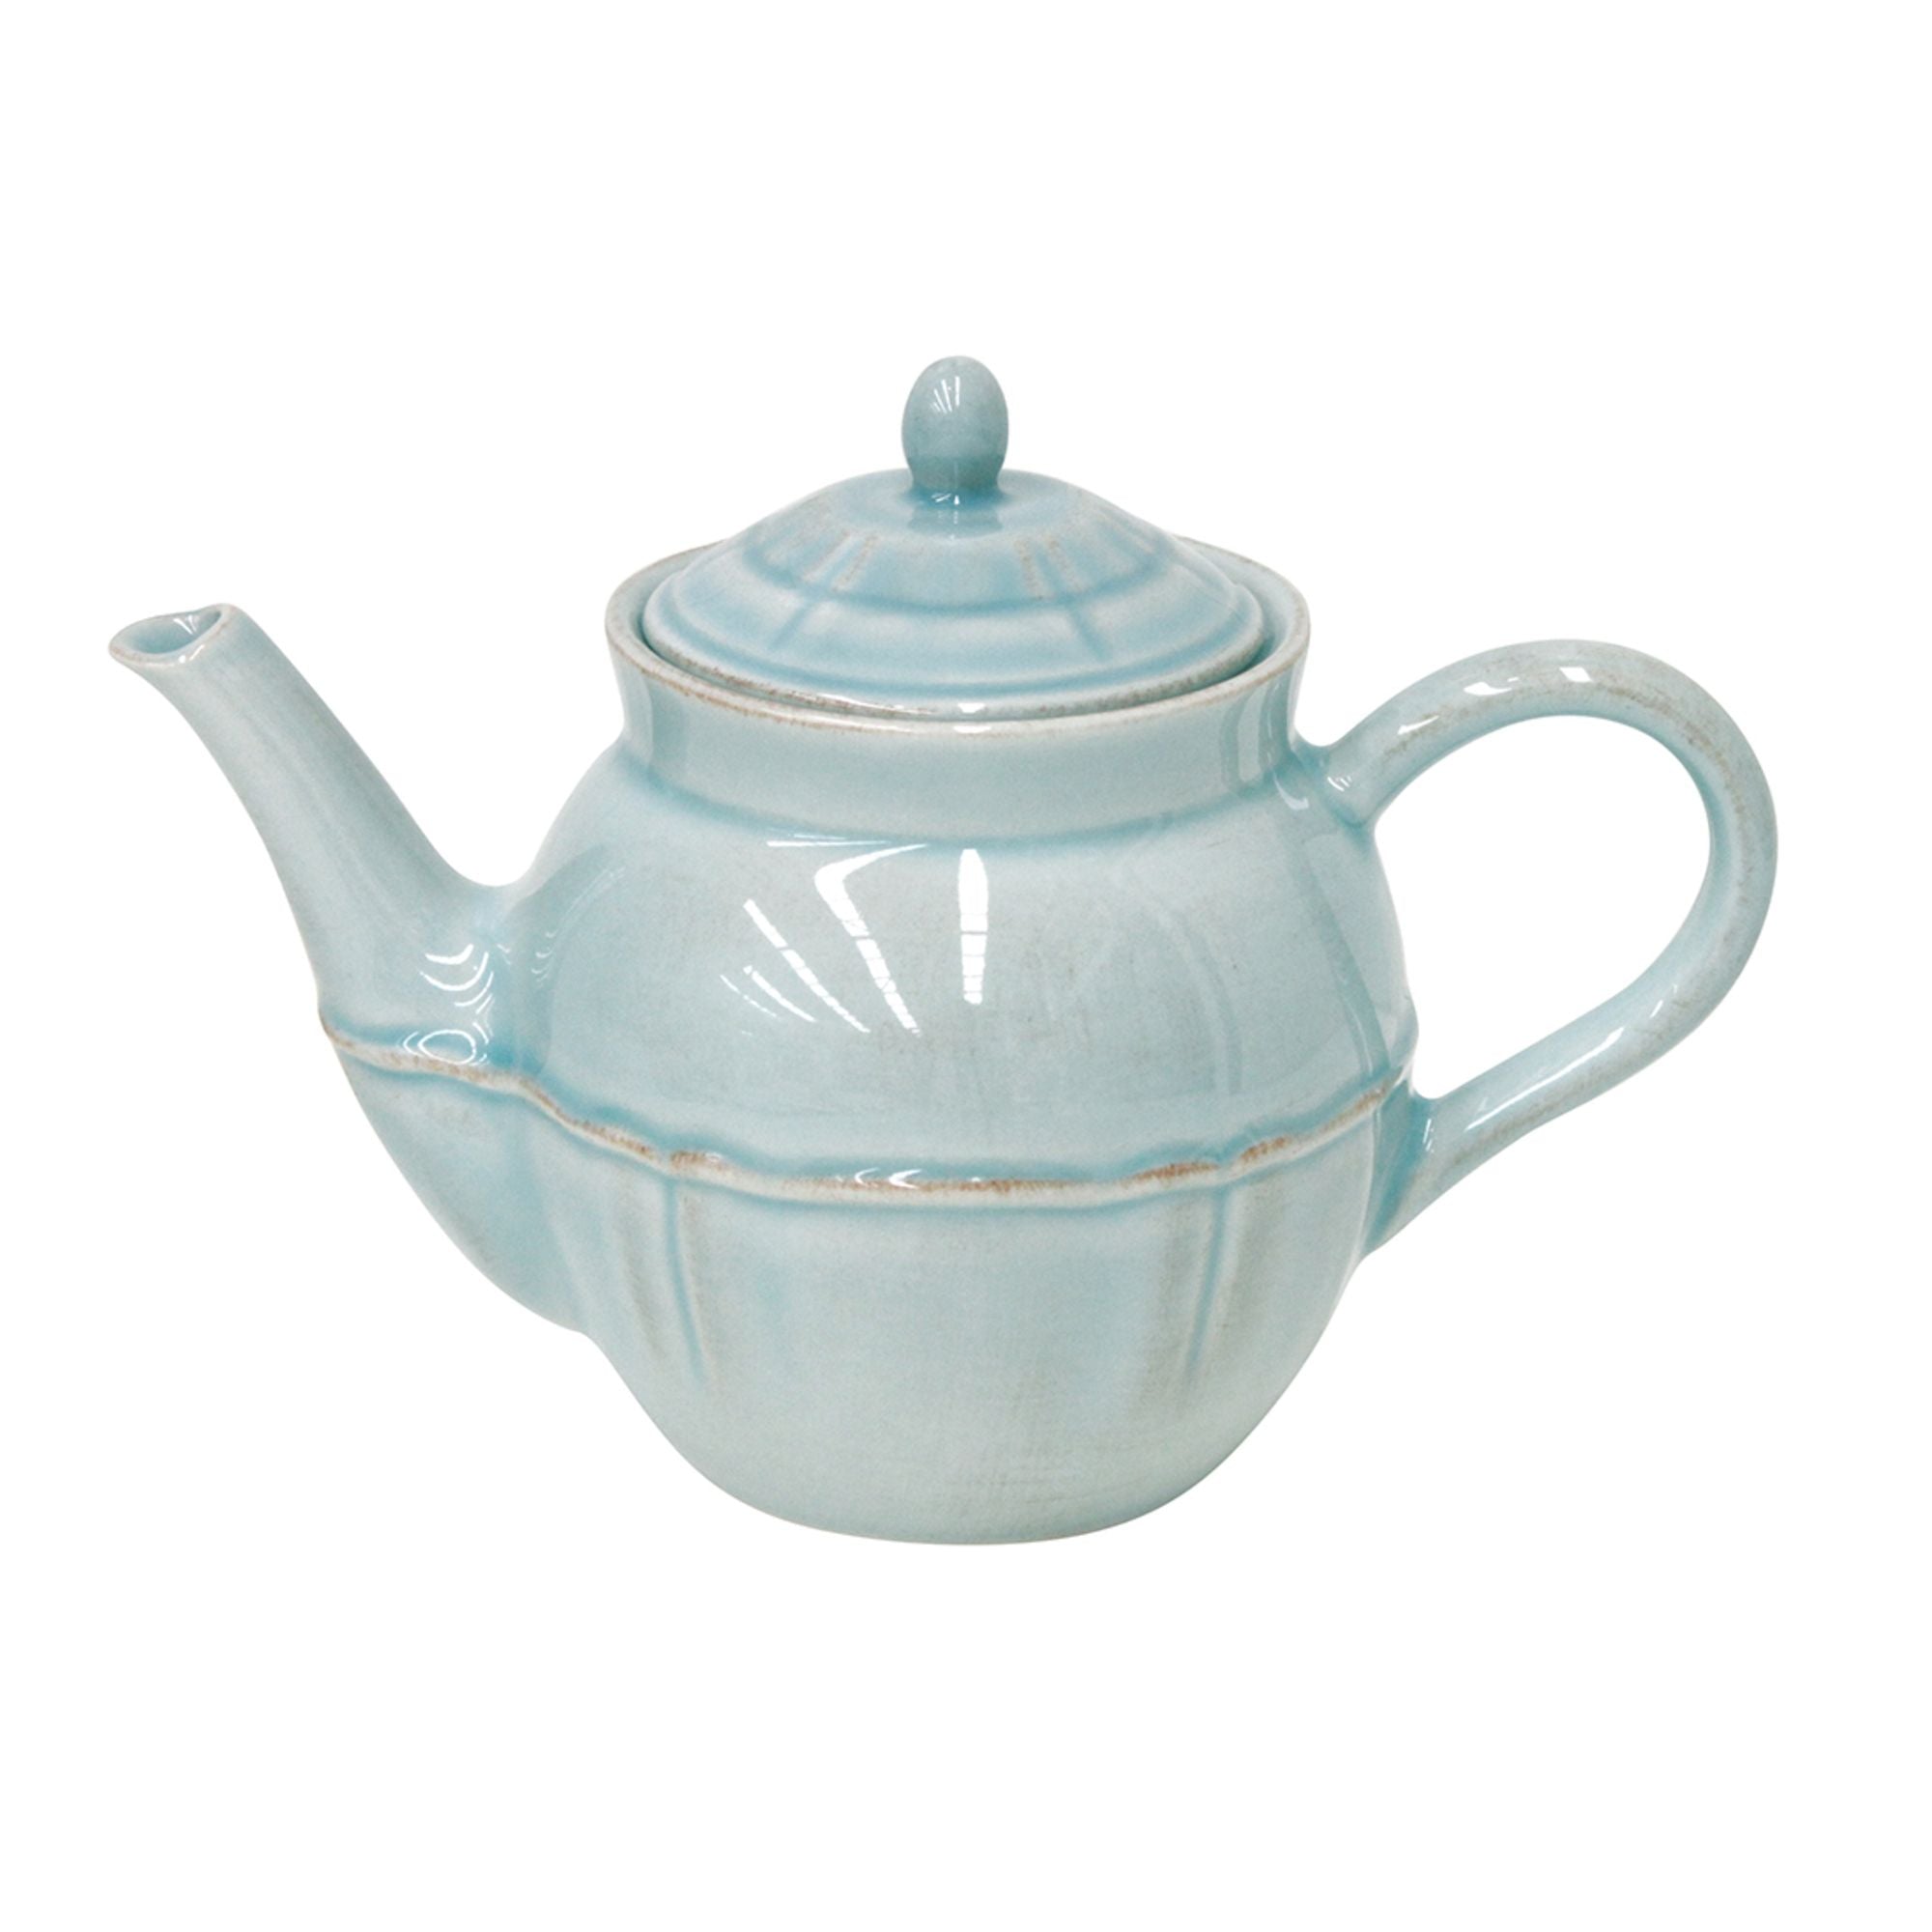 Alentejo Tea Pot 17 oz. Turquoise